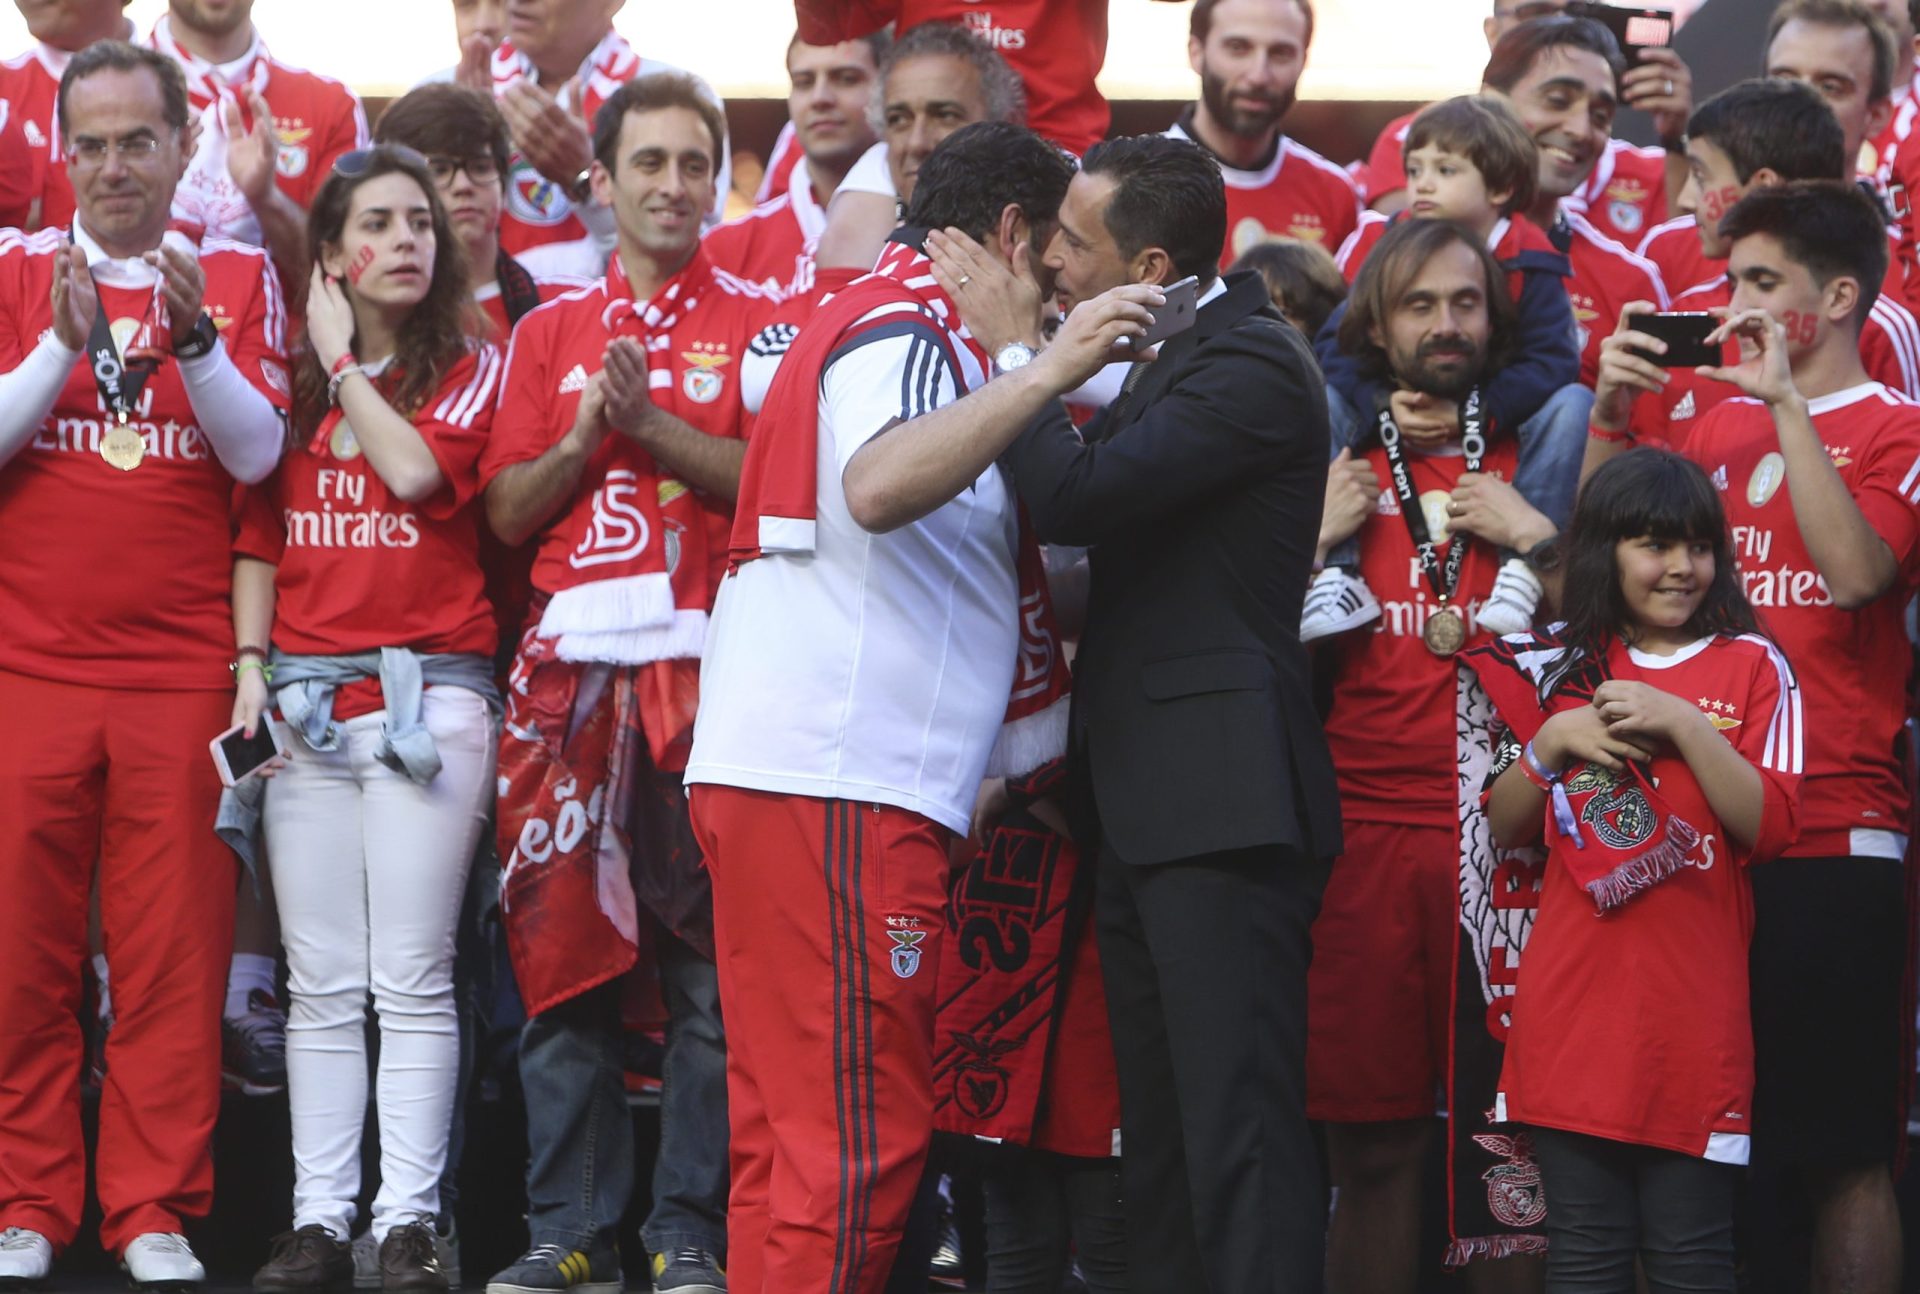 Benfica tricampeão nacional [fotogaleria]